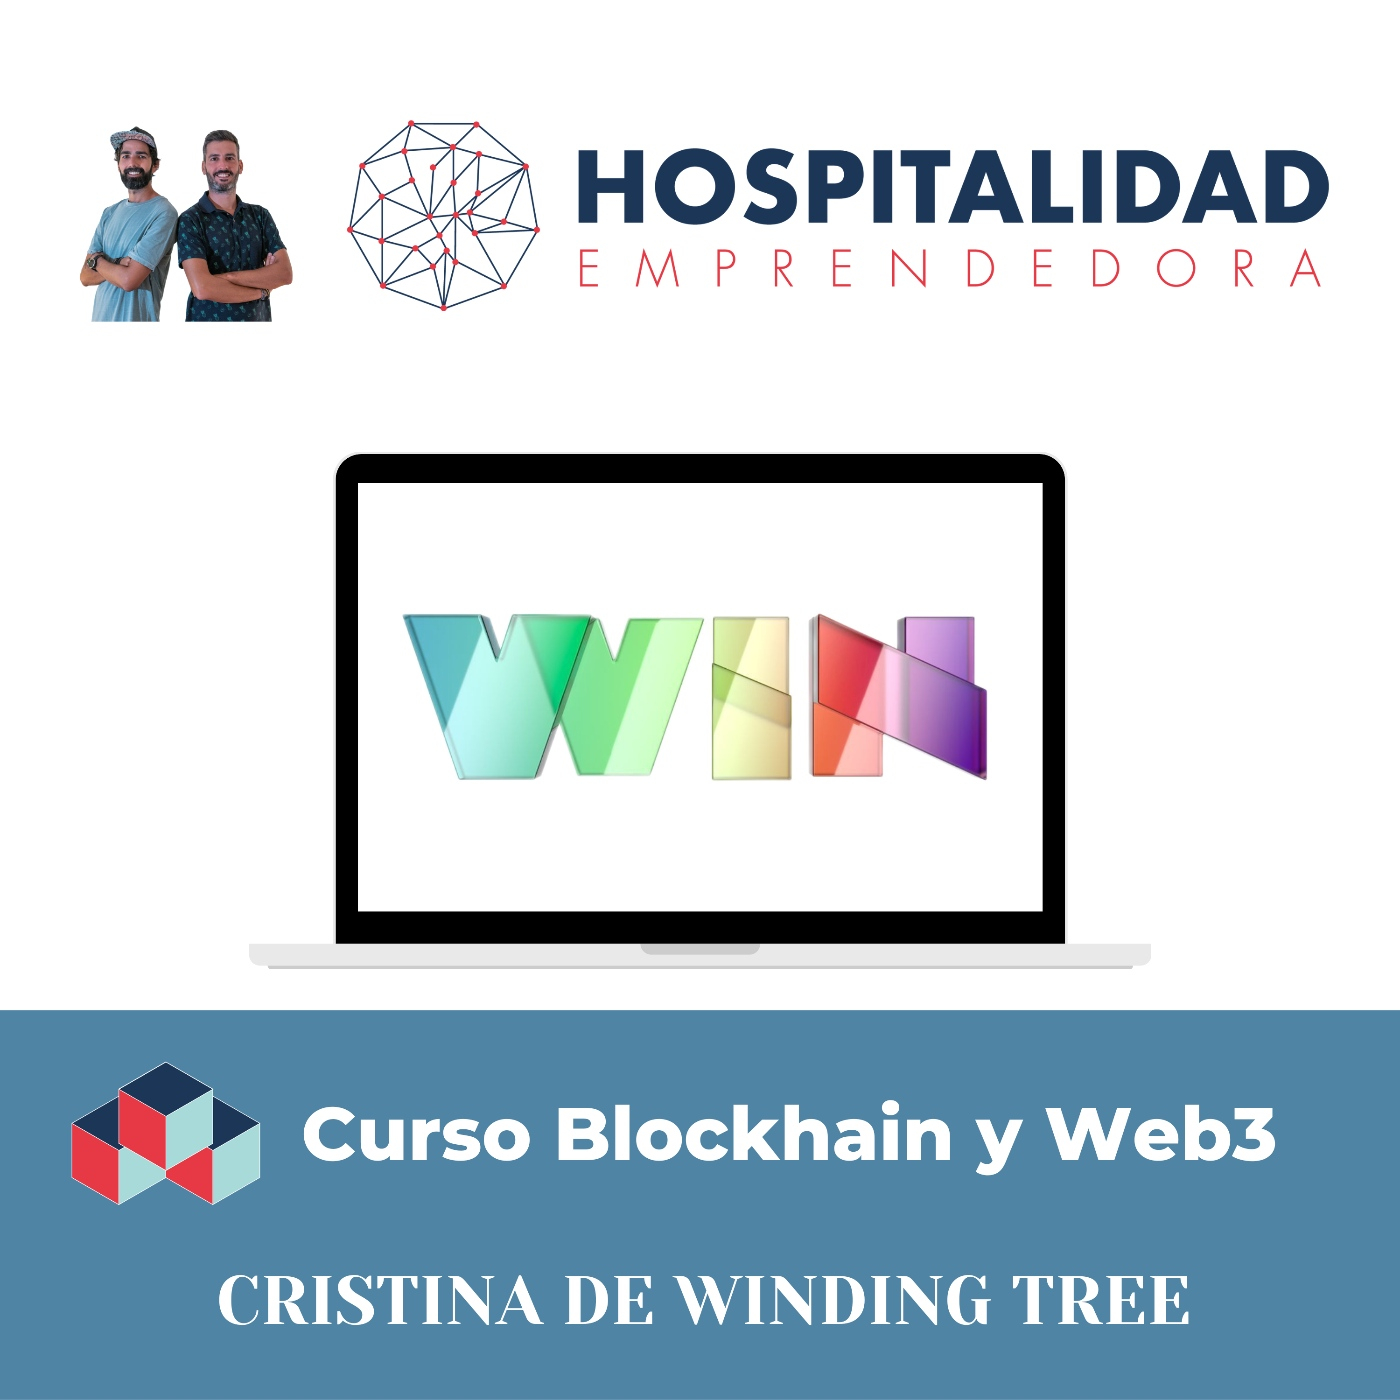 Curso Blockchain y Web3 Turismo y Hotelería. Sesion 4 con Cristina de Winding Tree